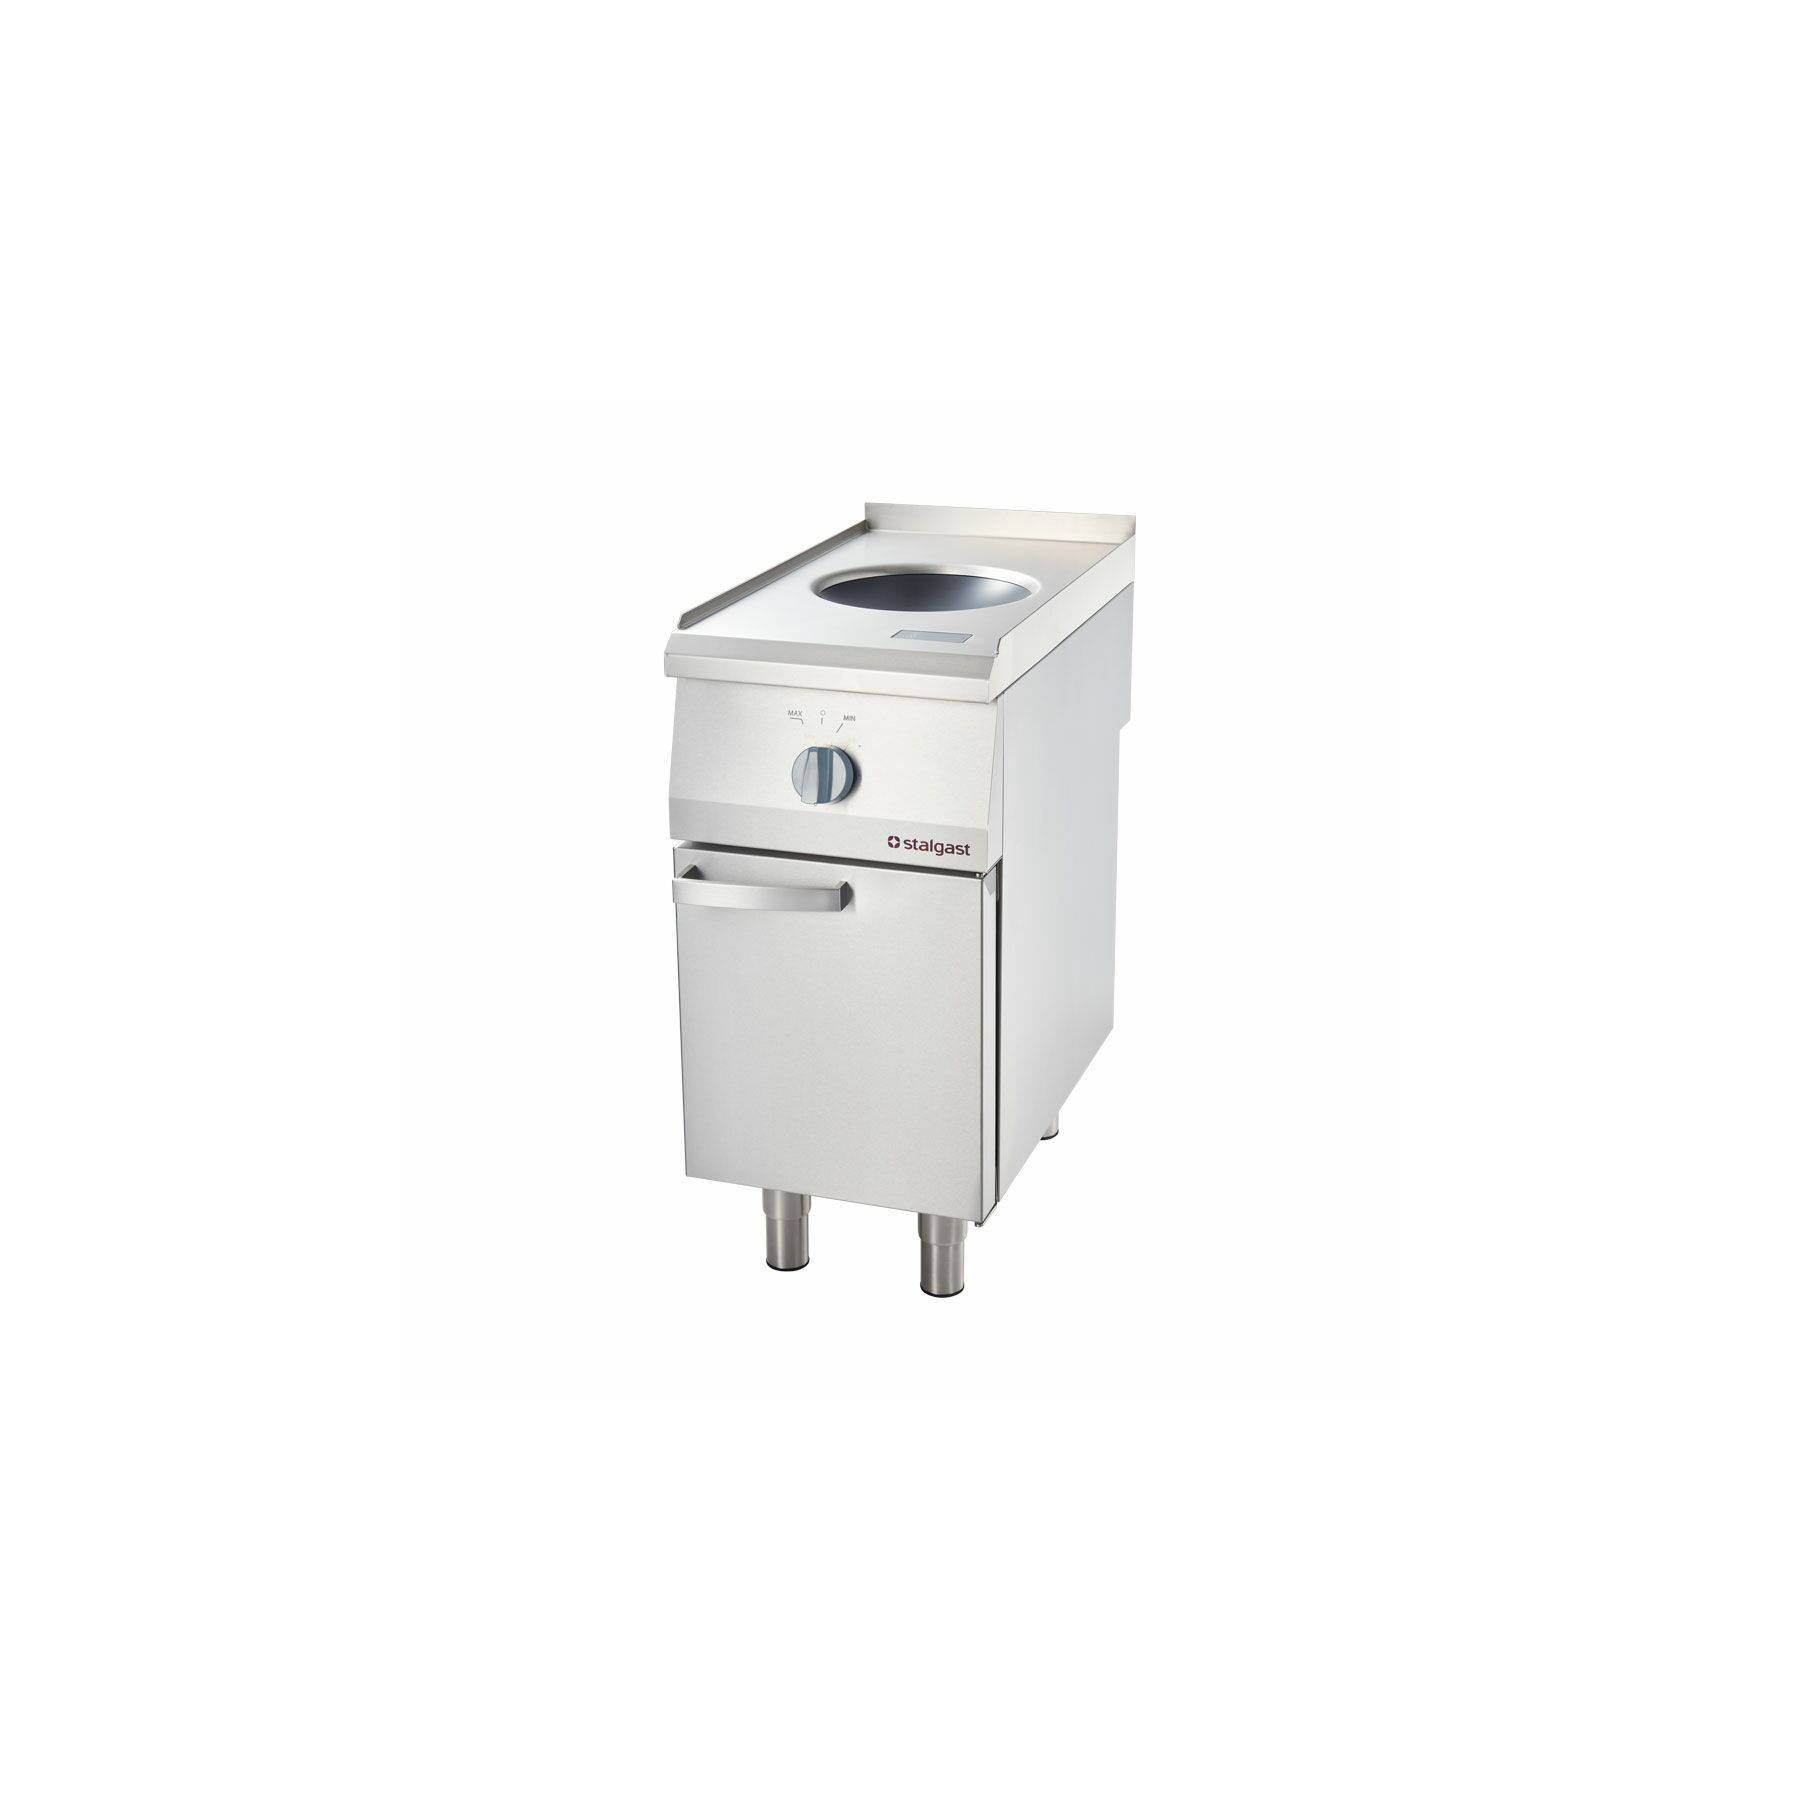 B-Ware:  Basics elektrische Kühlbox 21 Liter für 27,99